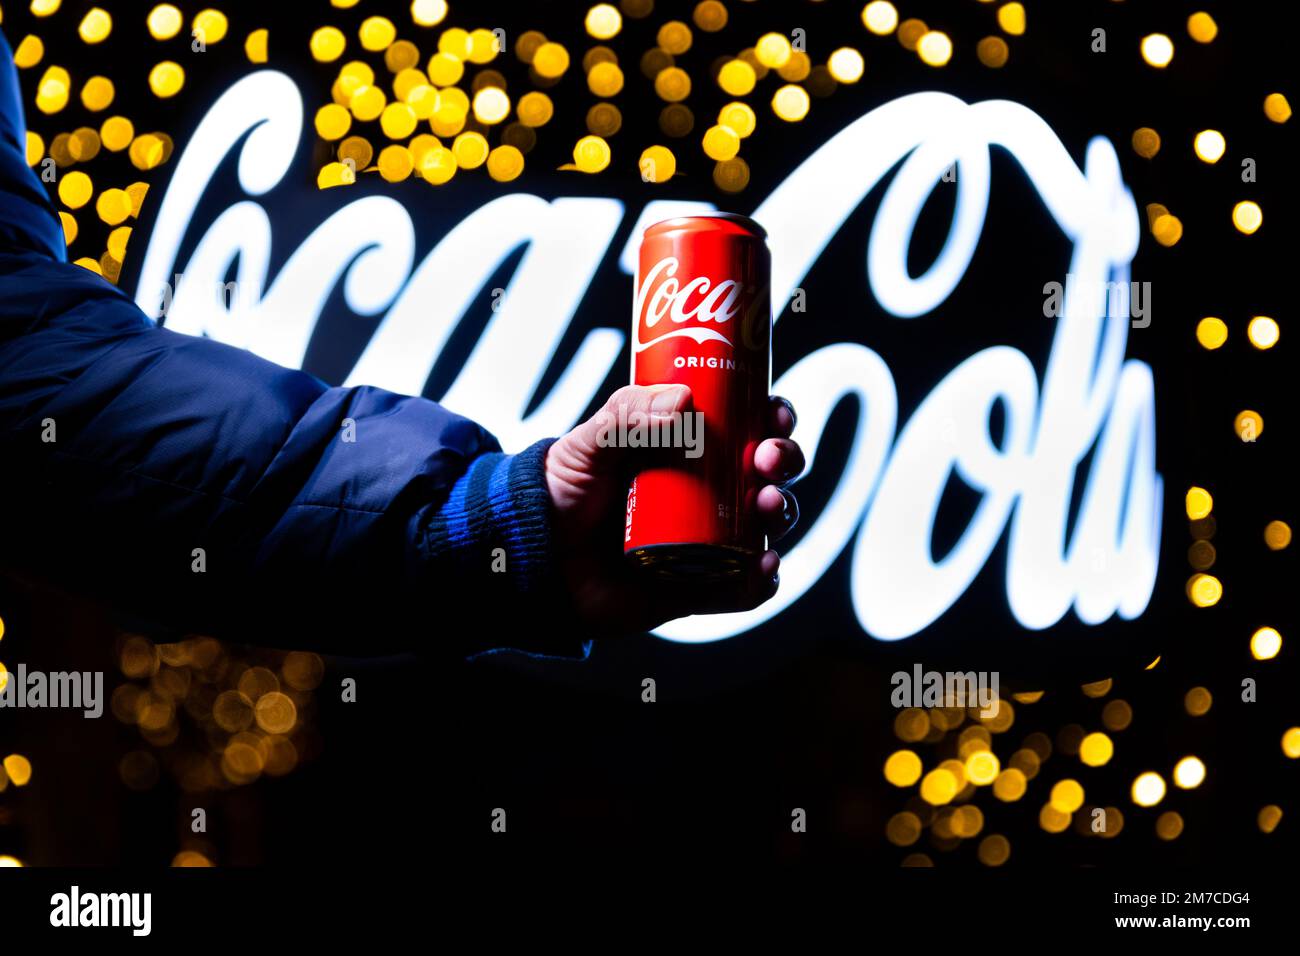 Belgrade, Serbie - 5 janvier 2023: Coca Cola peut à la main avec le signe Coca Cola dans l'arrière-plan tourné la nuit dans la ville de Belgrade, Serbie Banque D'Images